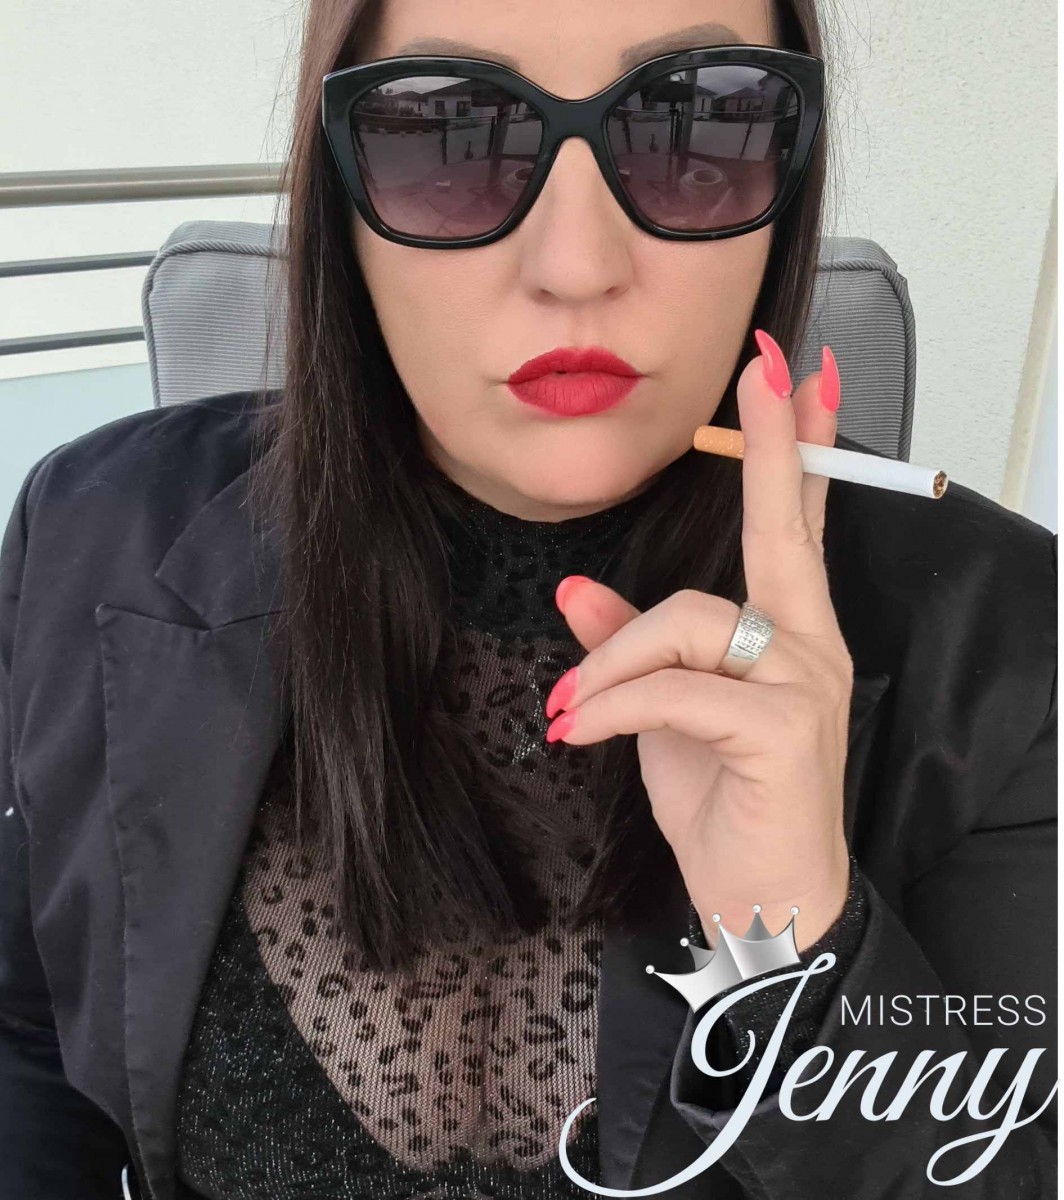 Mistress Jenny smokinggoddess smokingfetish